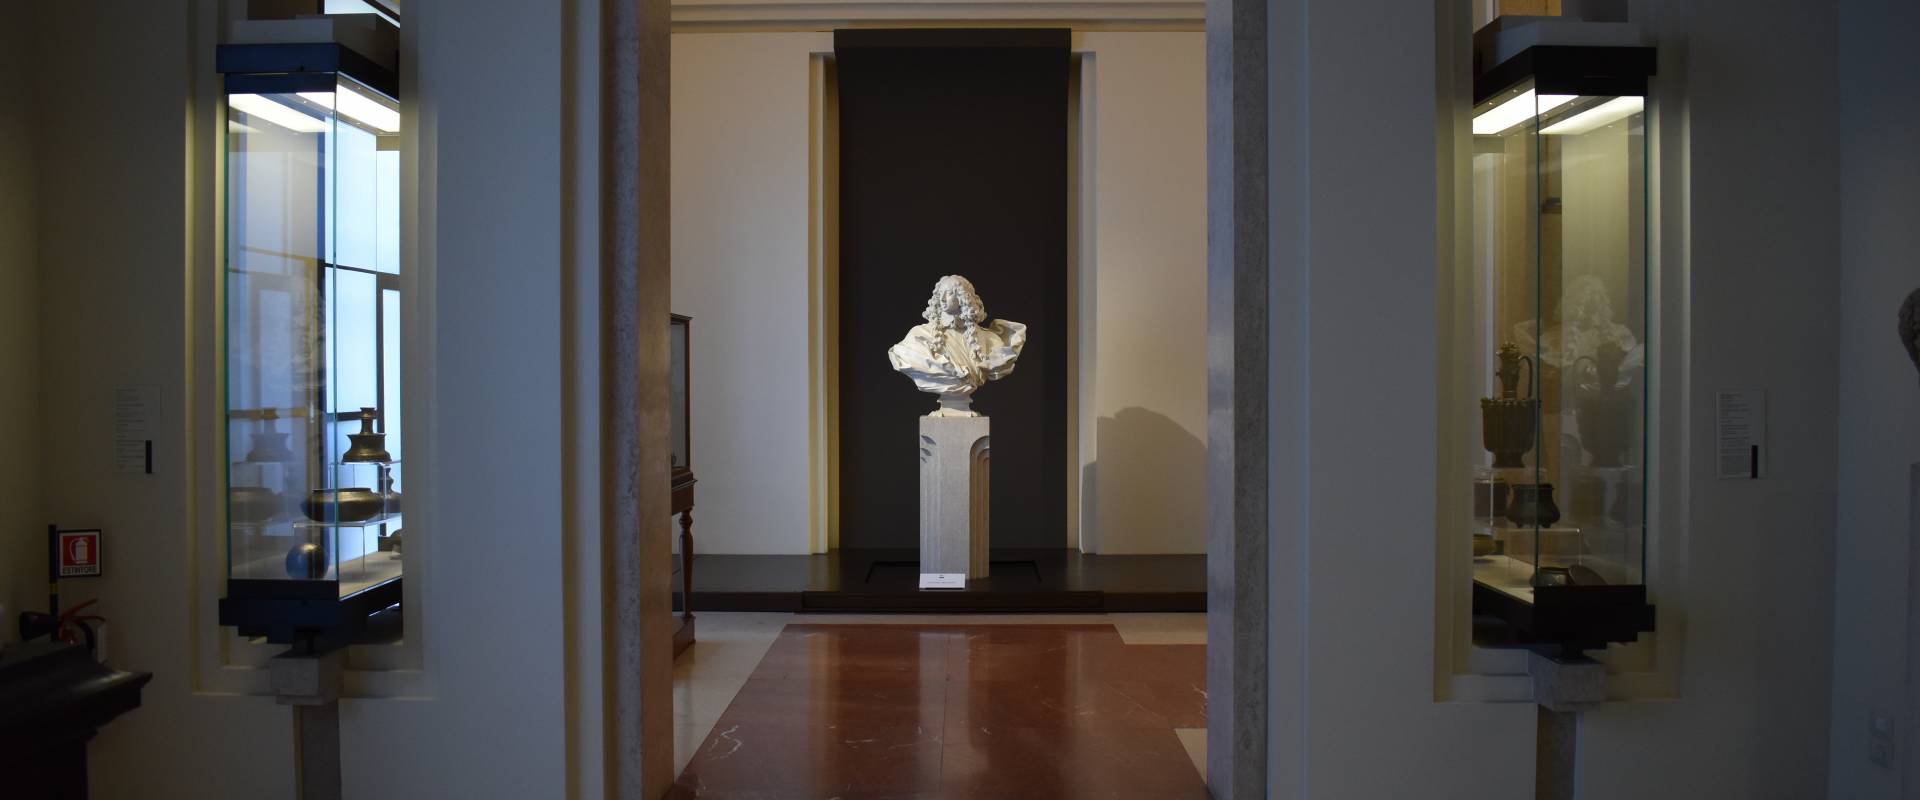 Sala Gian Lorenzo Bernini Ritratto di Francesco I d’Este galleria Estense (Modena) foto di Nicola Quirico